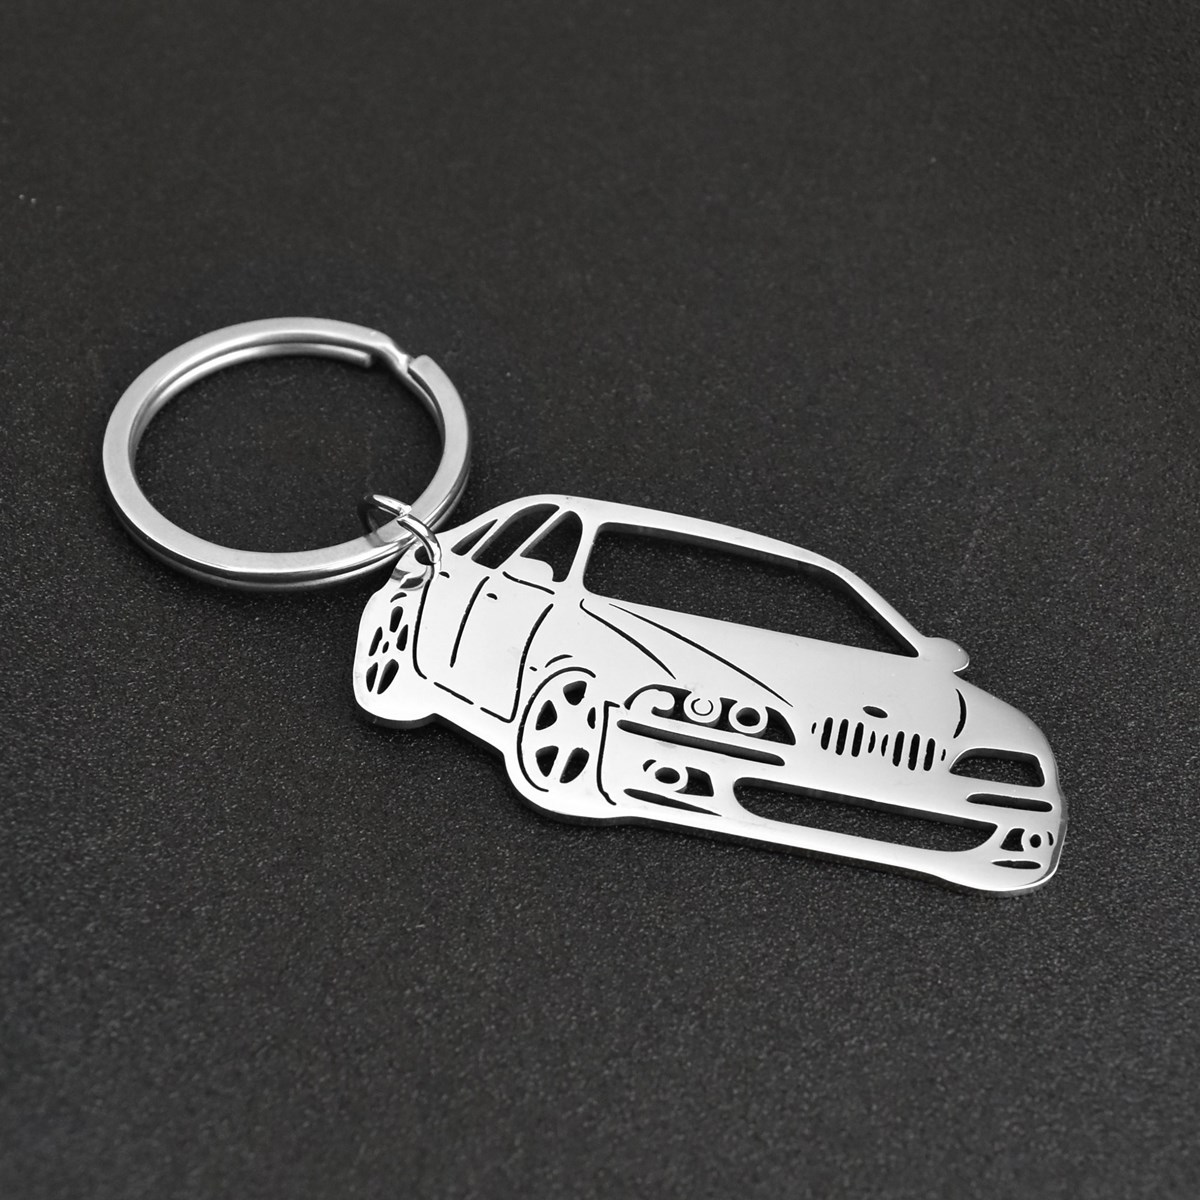 Porte-clés forme de voiture automobile ajourée argentée - vue 4